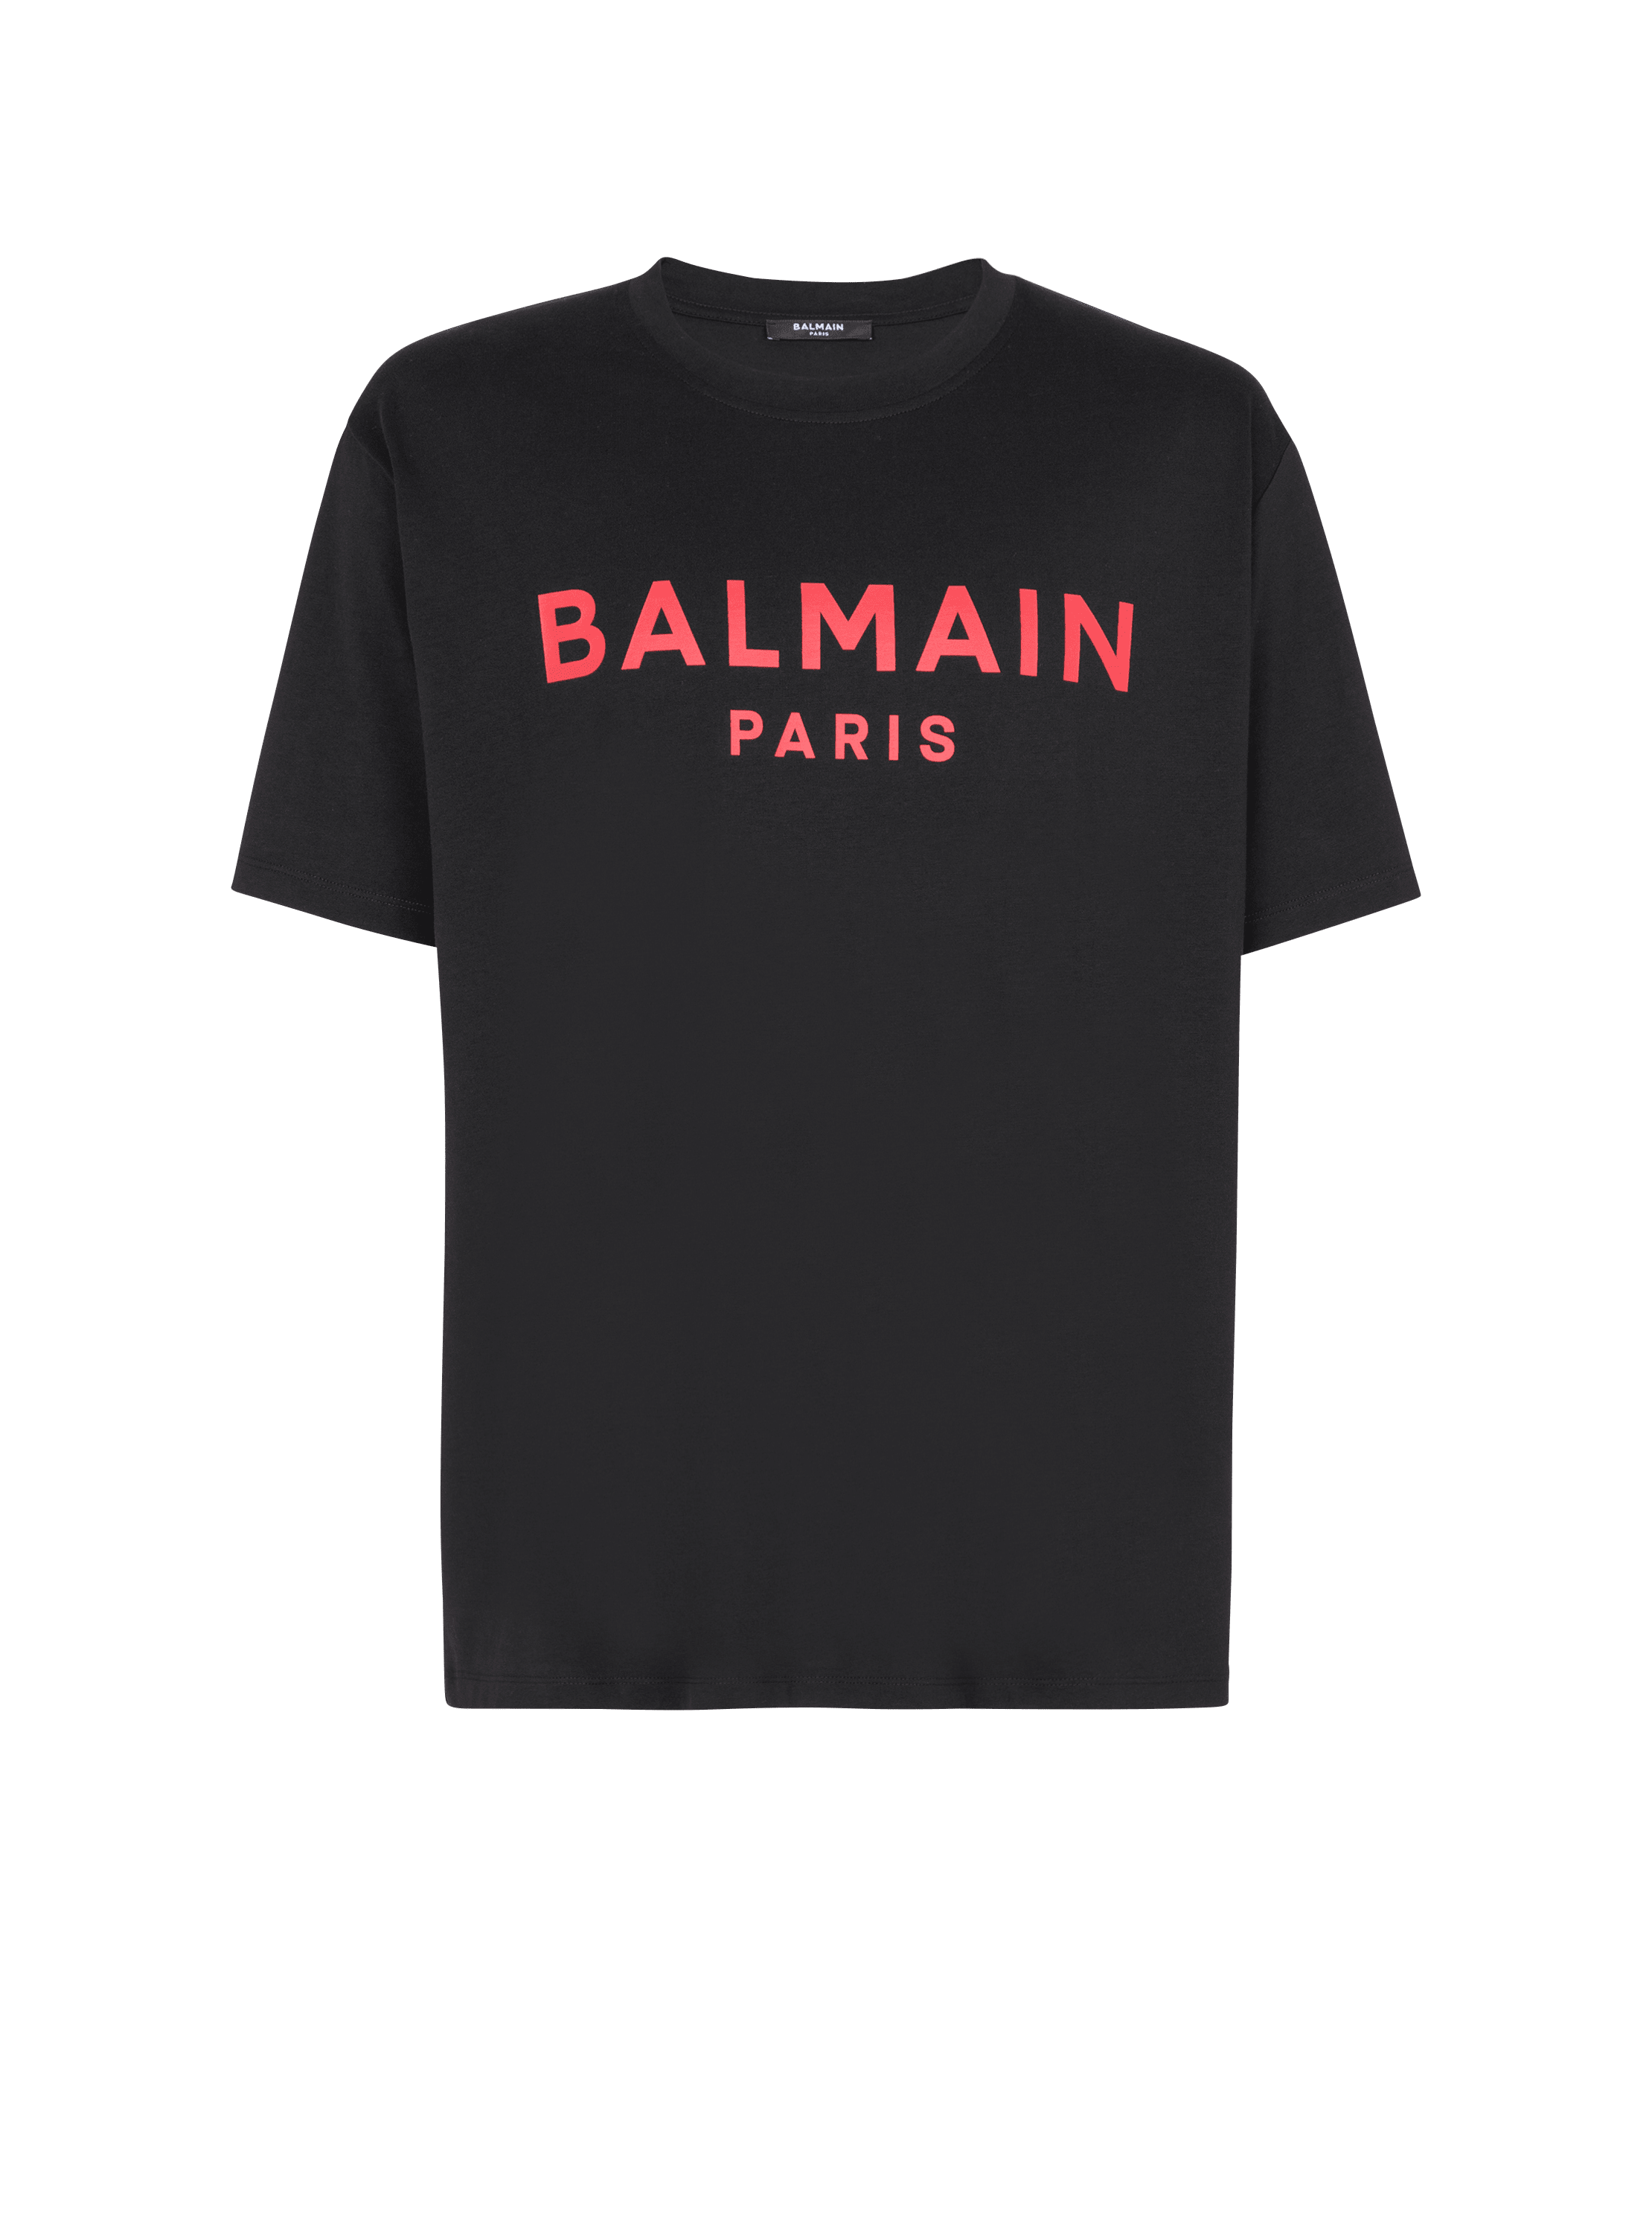 T-Shirt mit Balmain Paris-Print , schwarz, hi-res